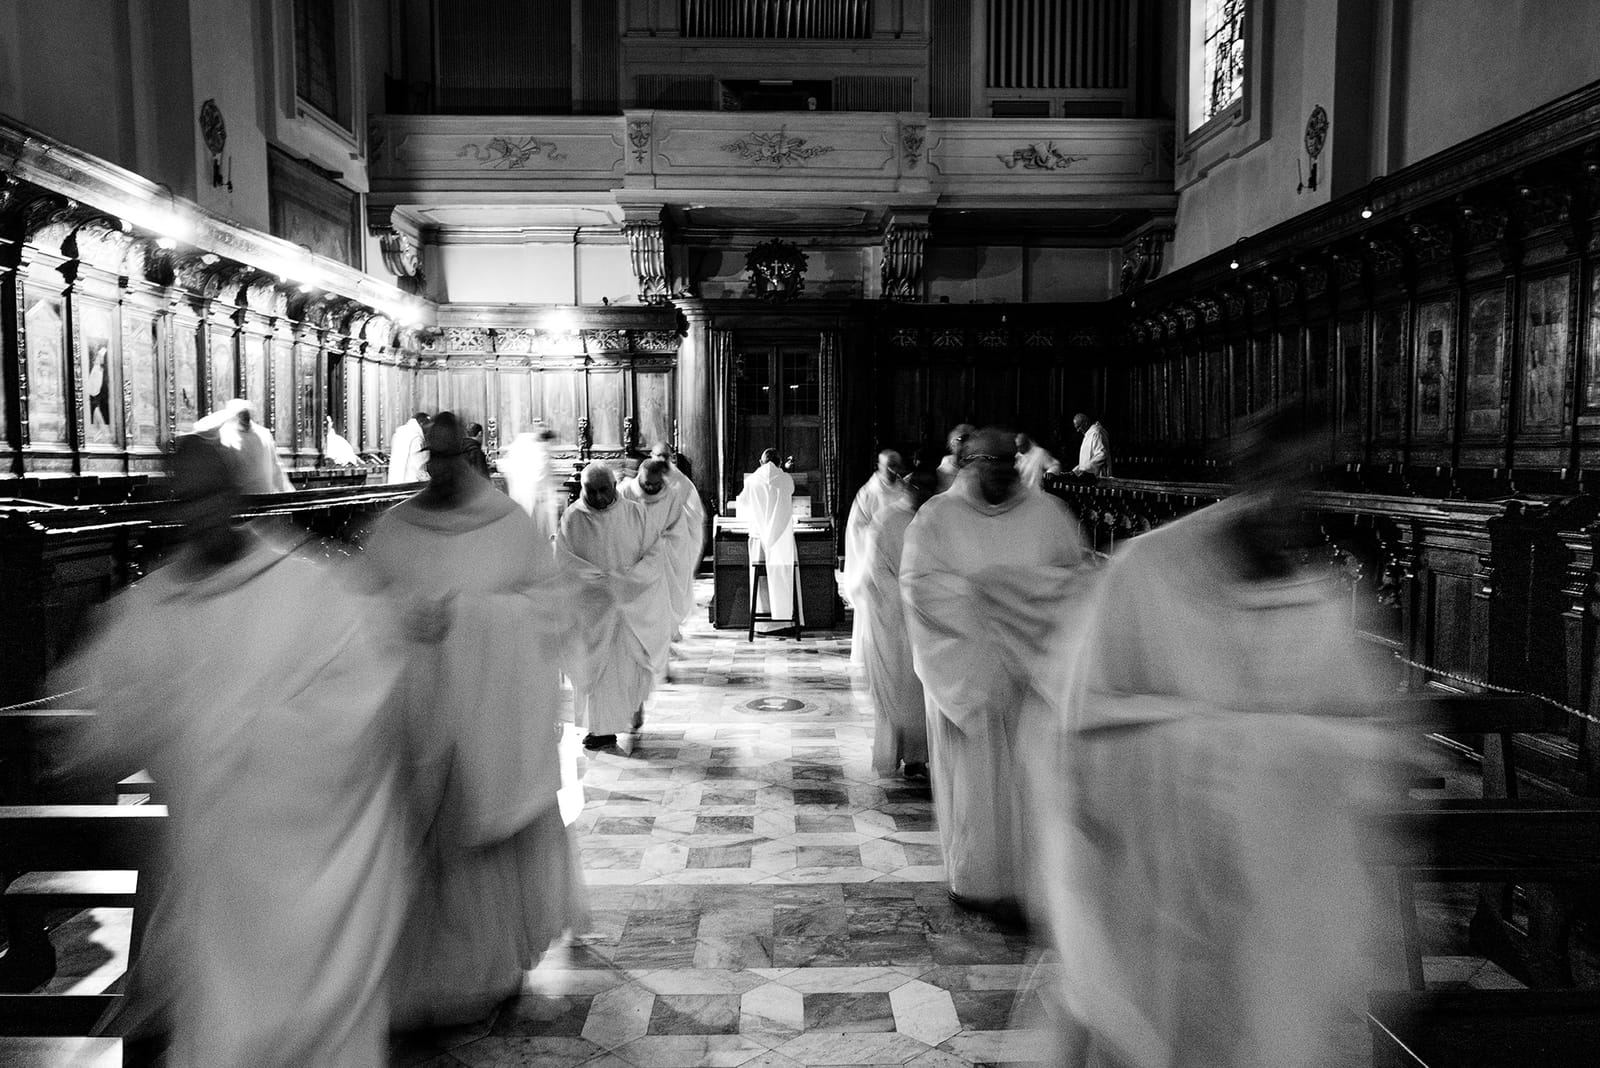 Alessandro Giugni ci racconta la vita monastica e i suoi ineffabili misteri